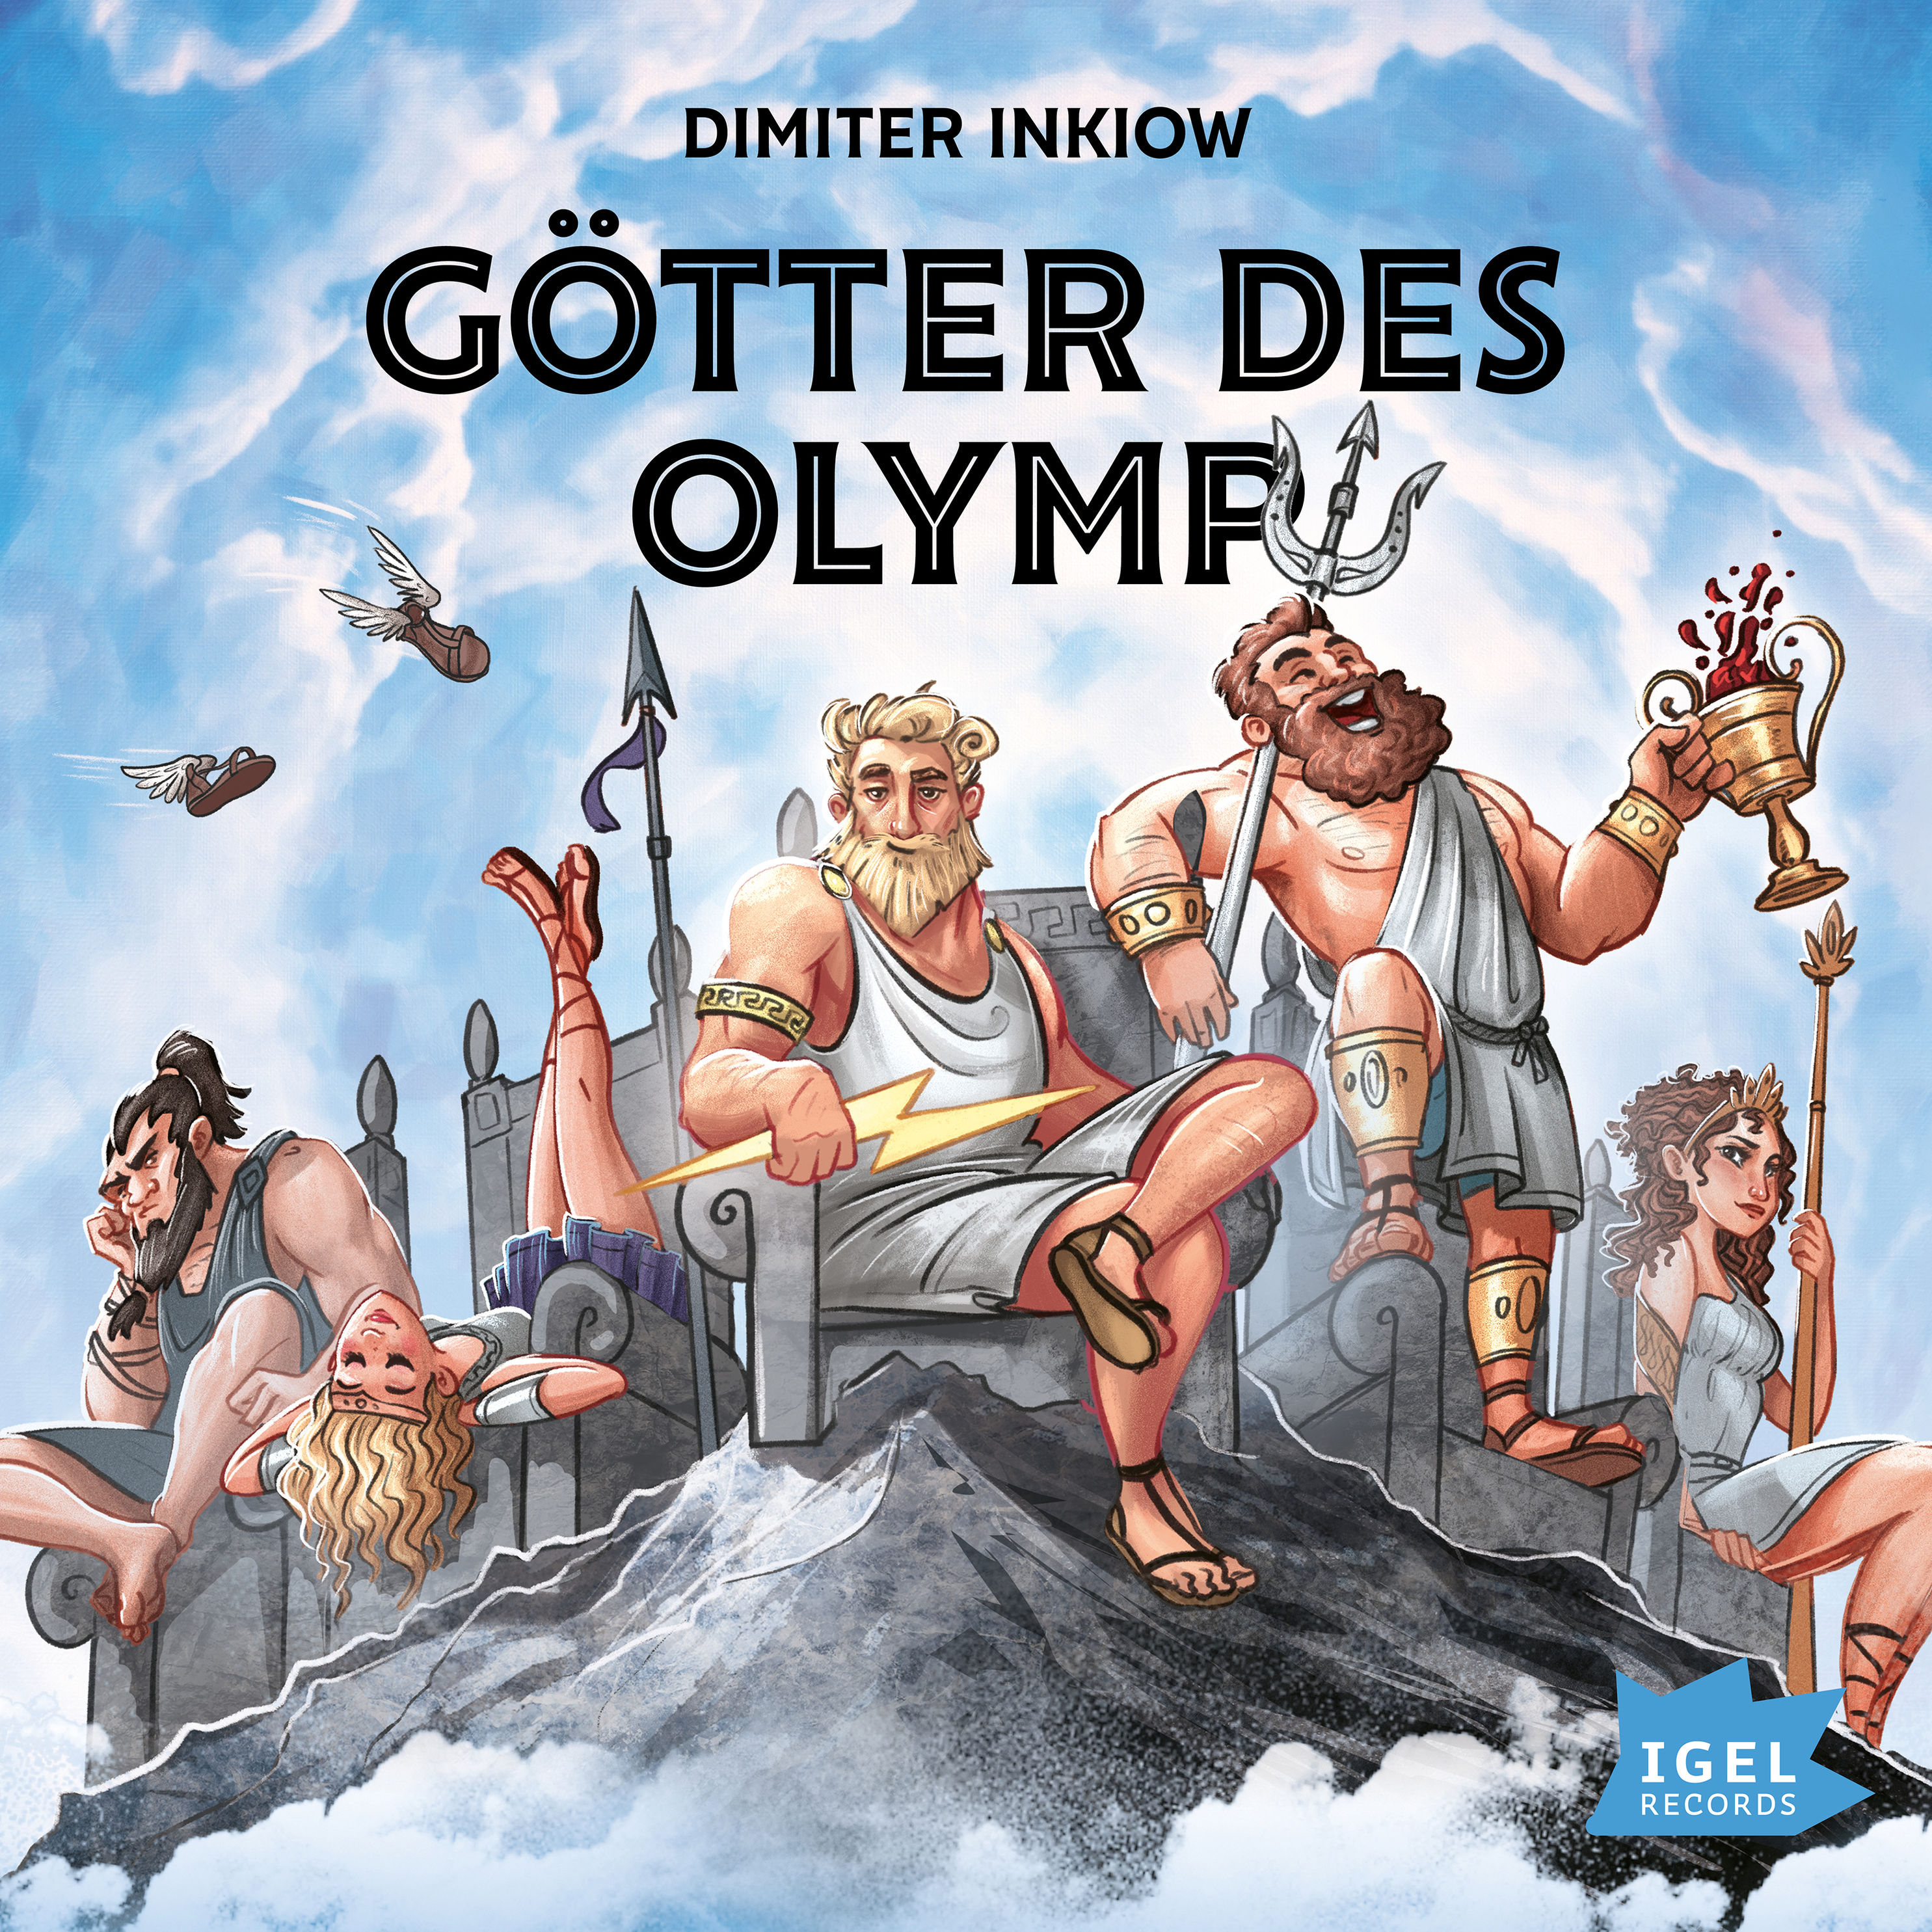 Götter des Olymp Hörbuch sicher downloaden bei Weltbild.de